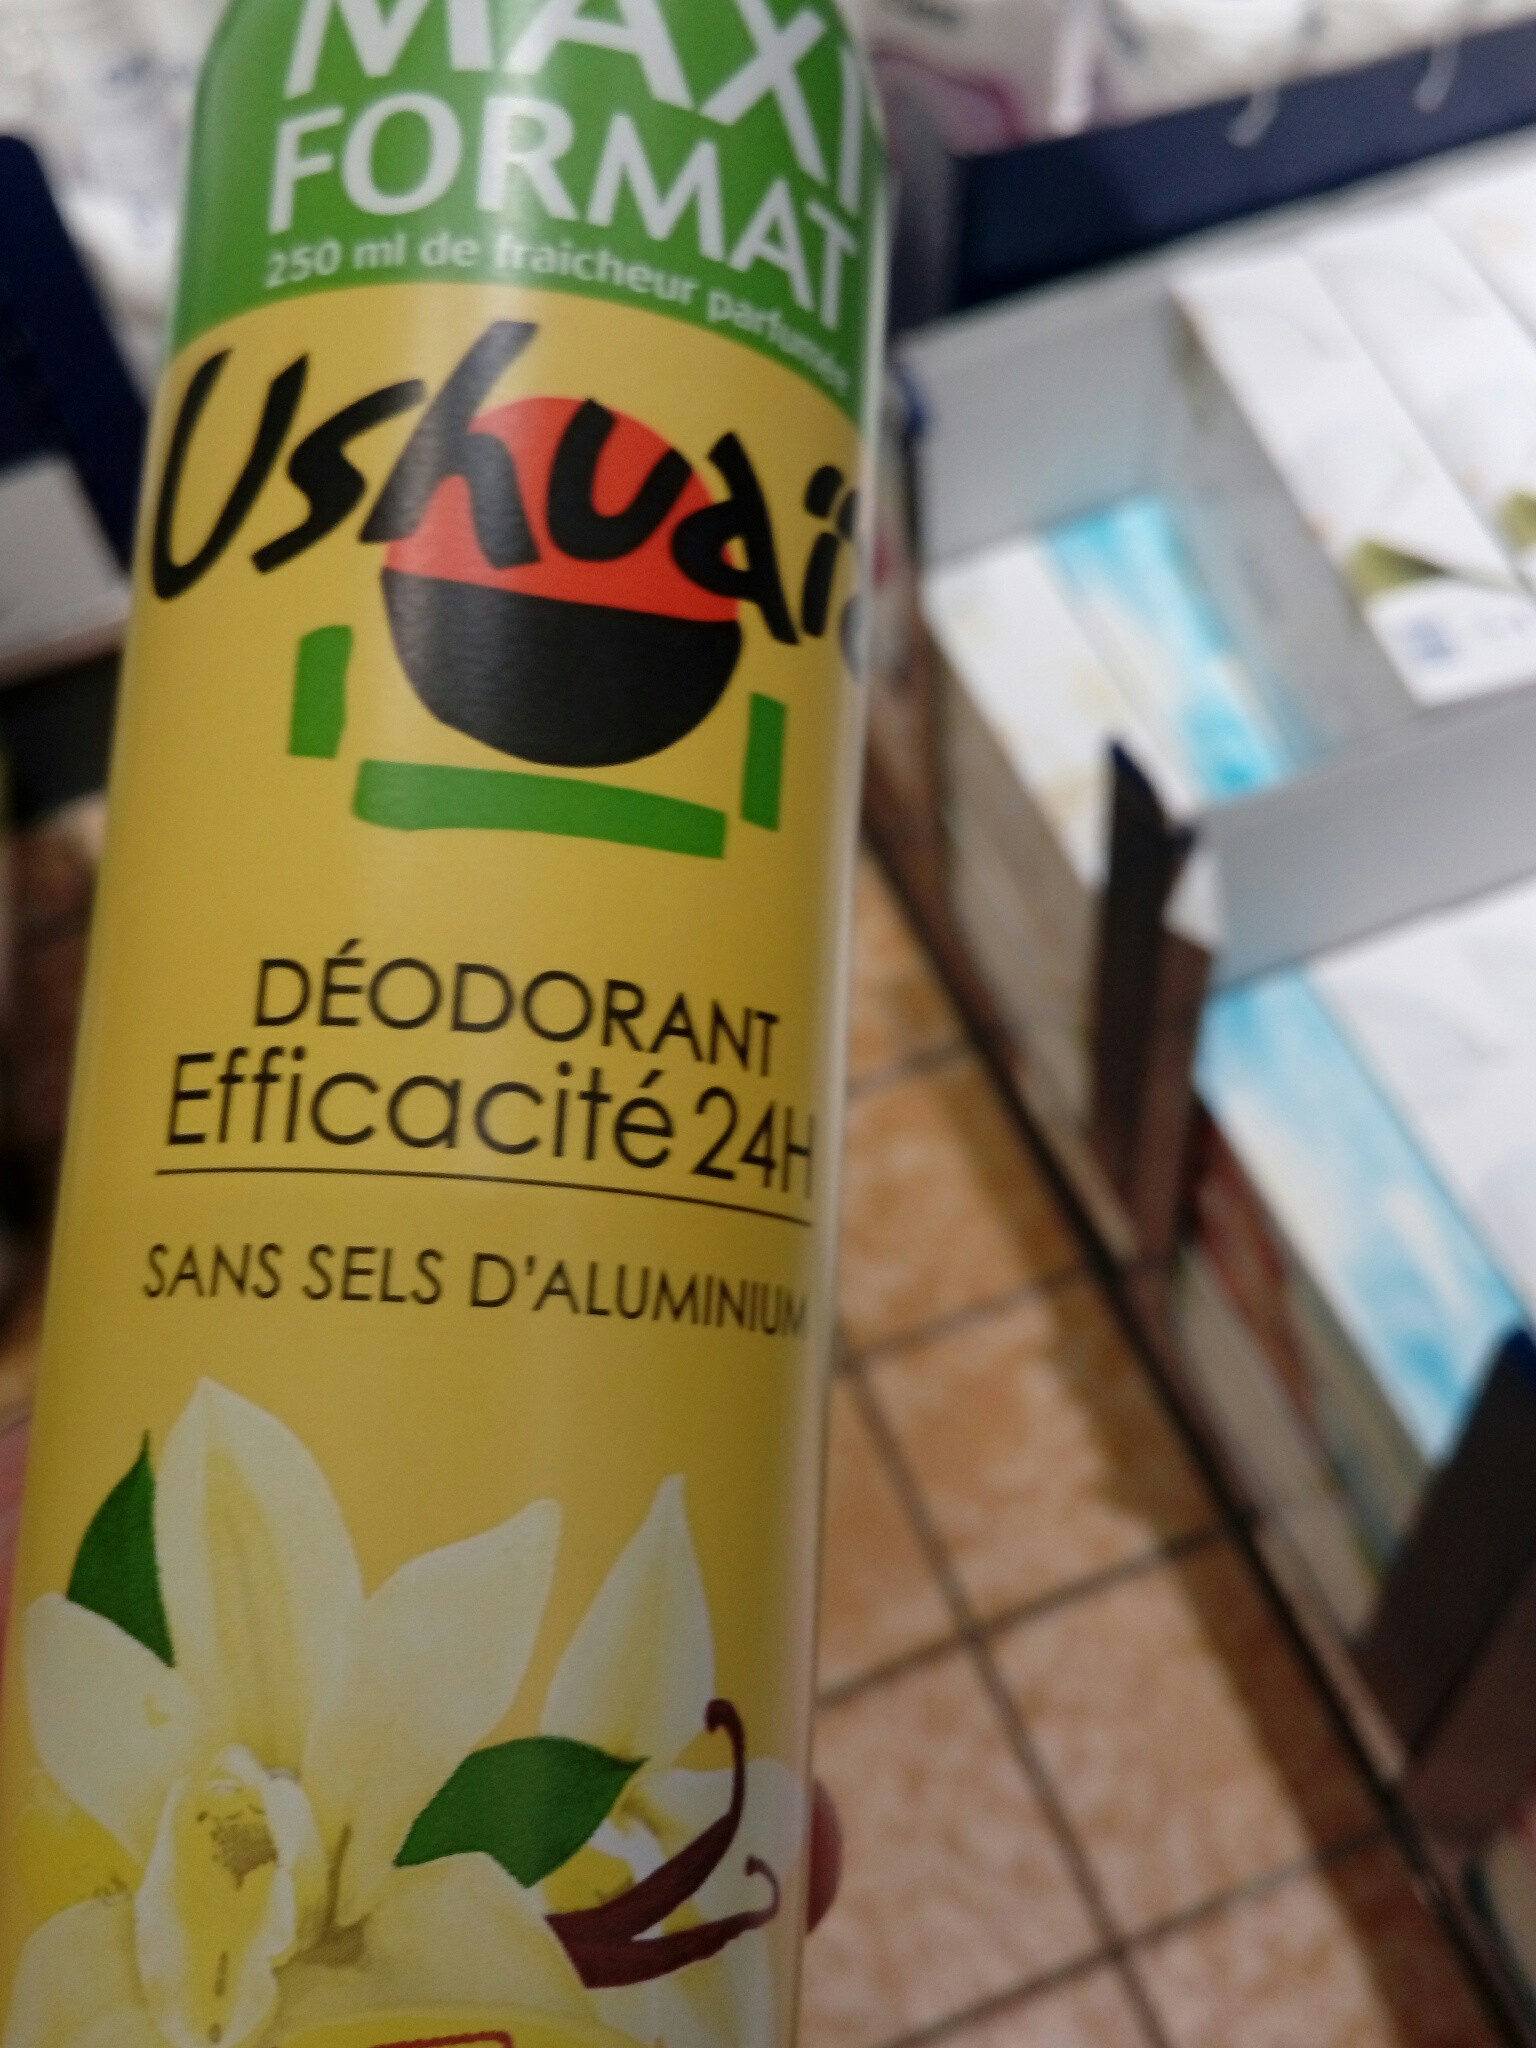 Ushuaia déodorant efficacité 24 h - Produit - fr